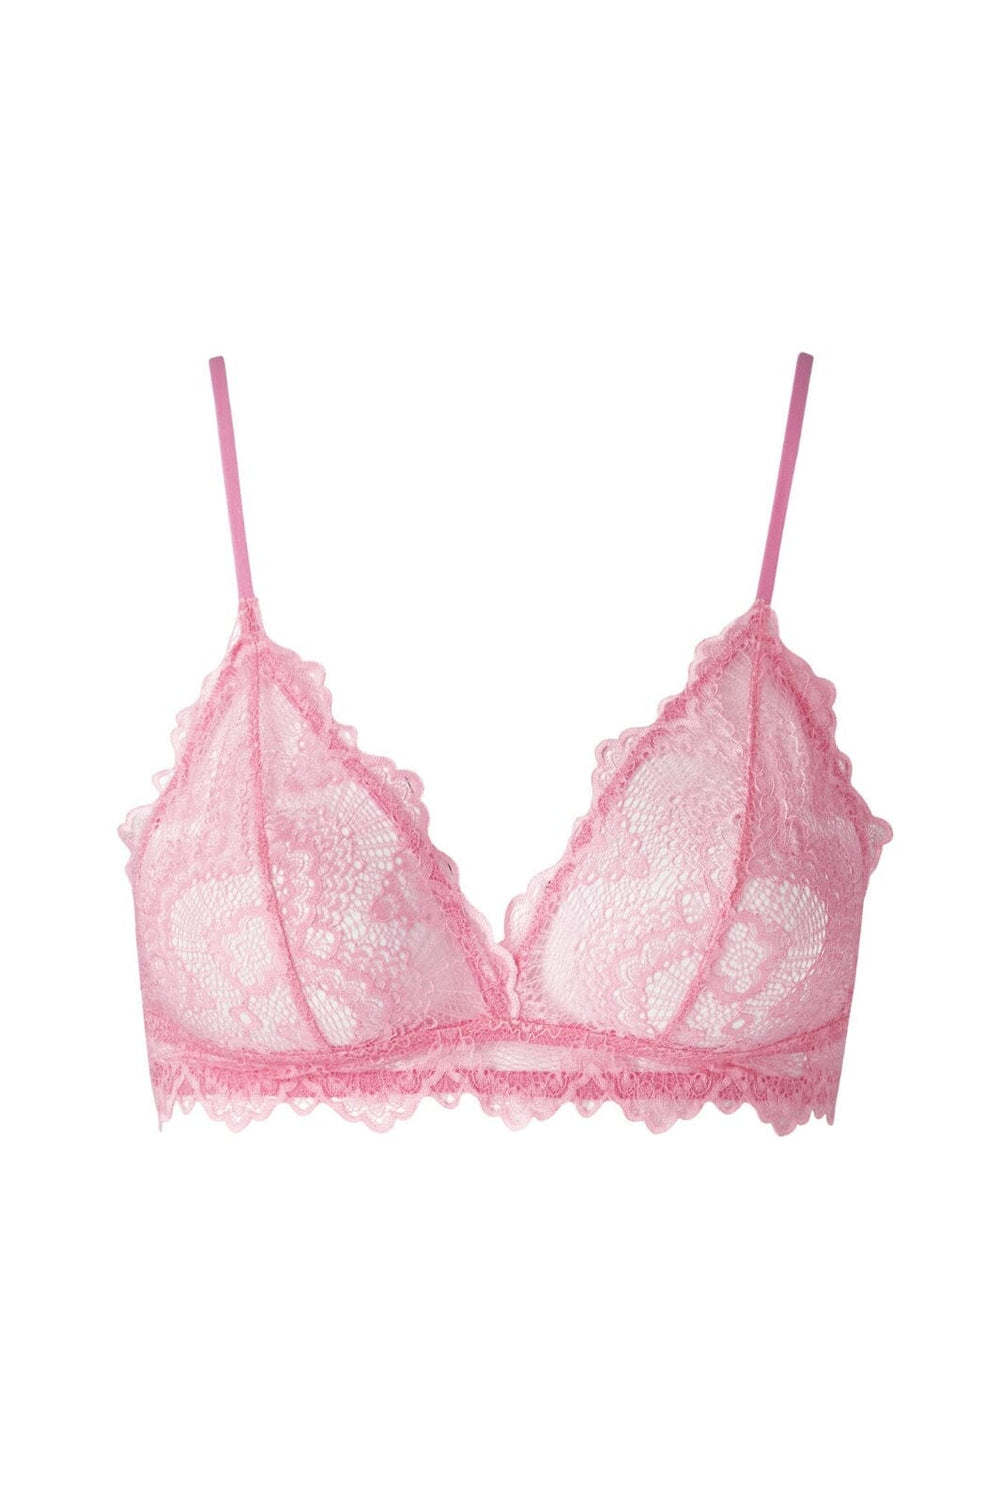 Understatement Underwear - Lace Triangle Bralette - Candy Pink BH 